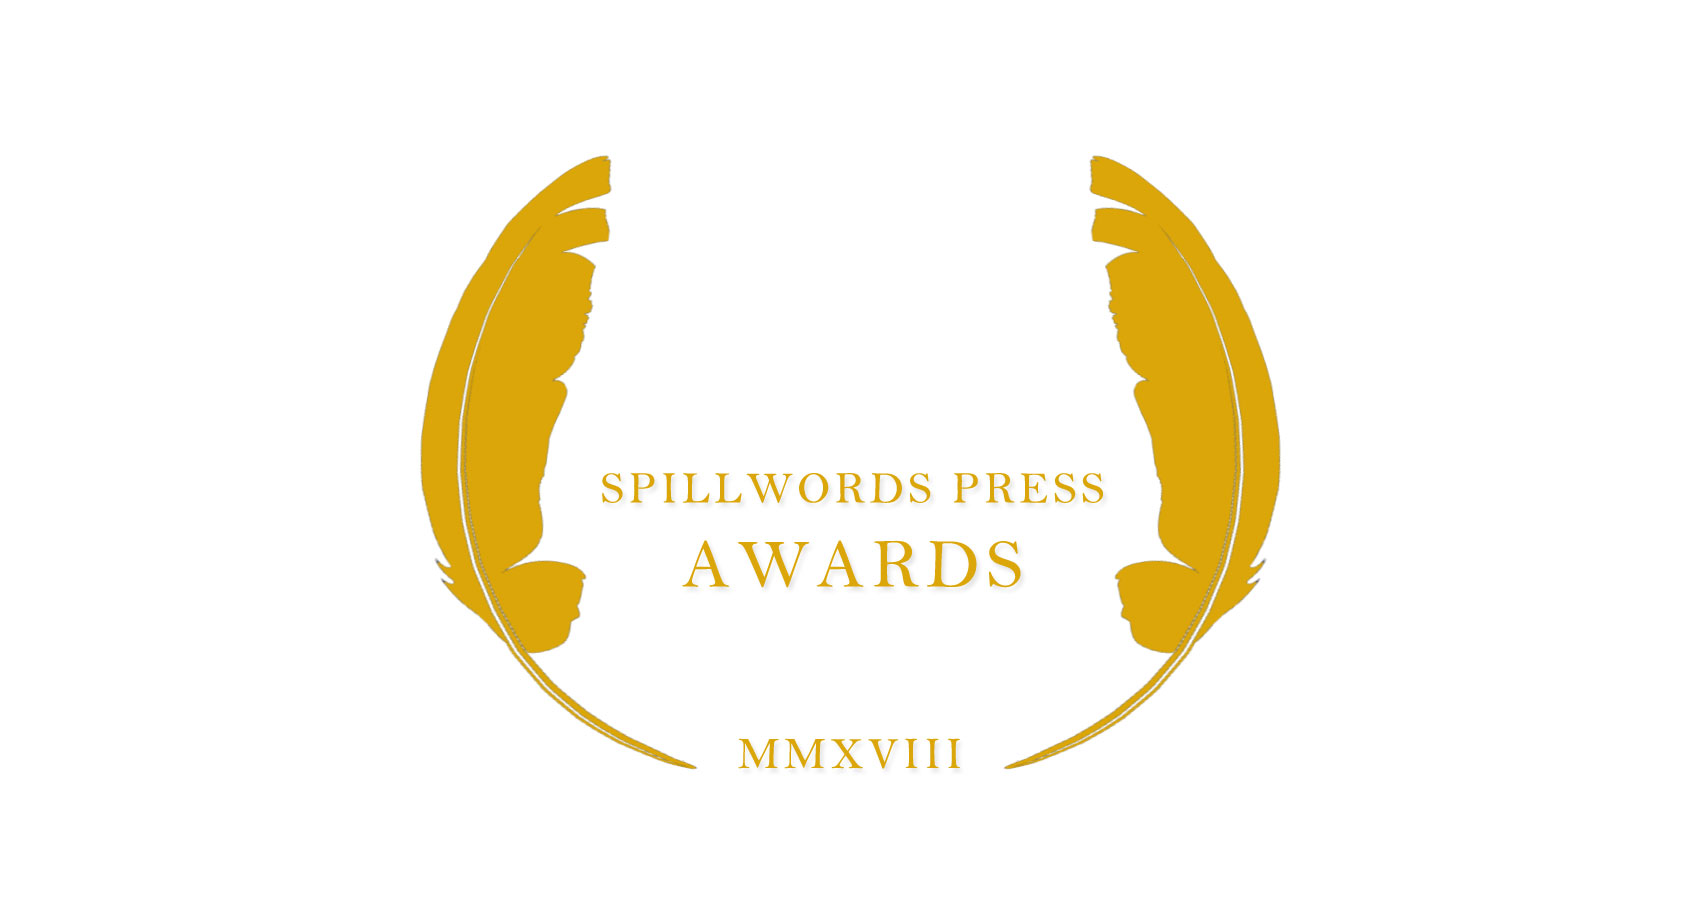 Spillwords Press Awards 2018 at Spillwords.com